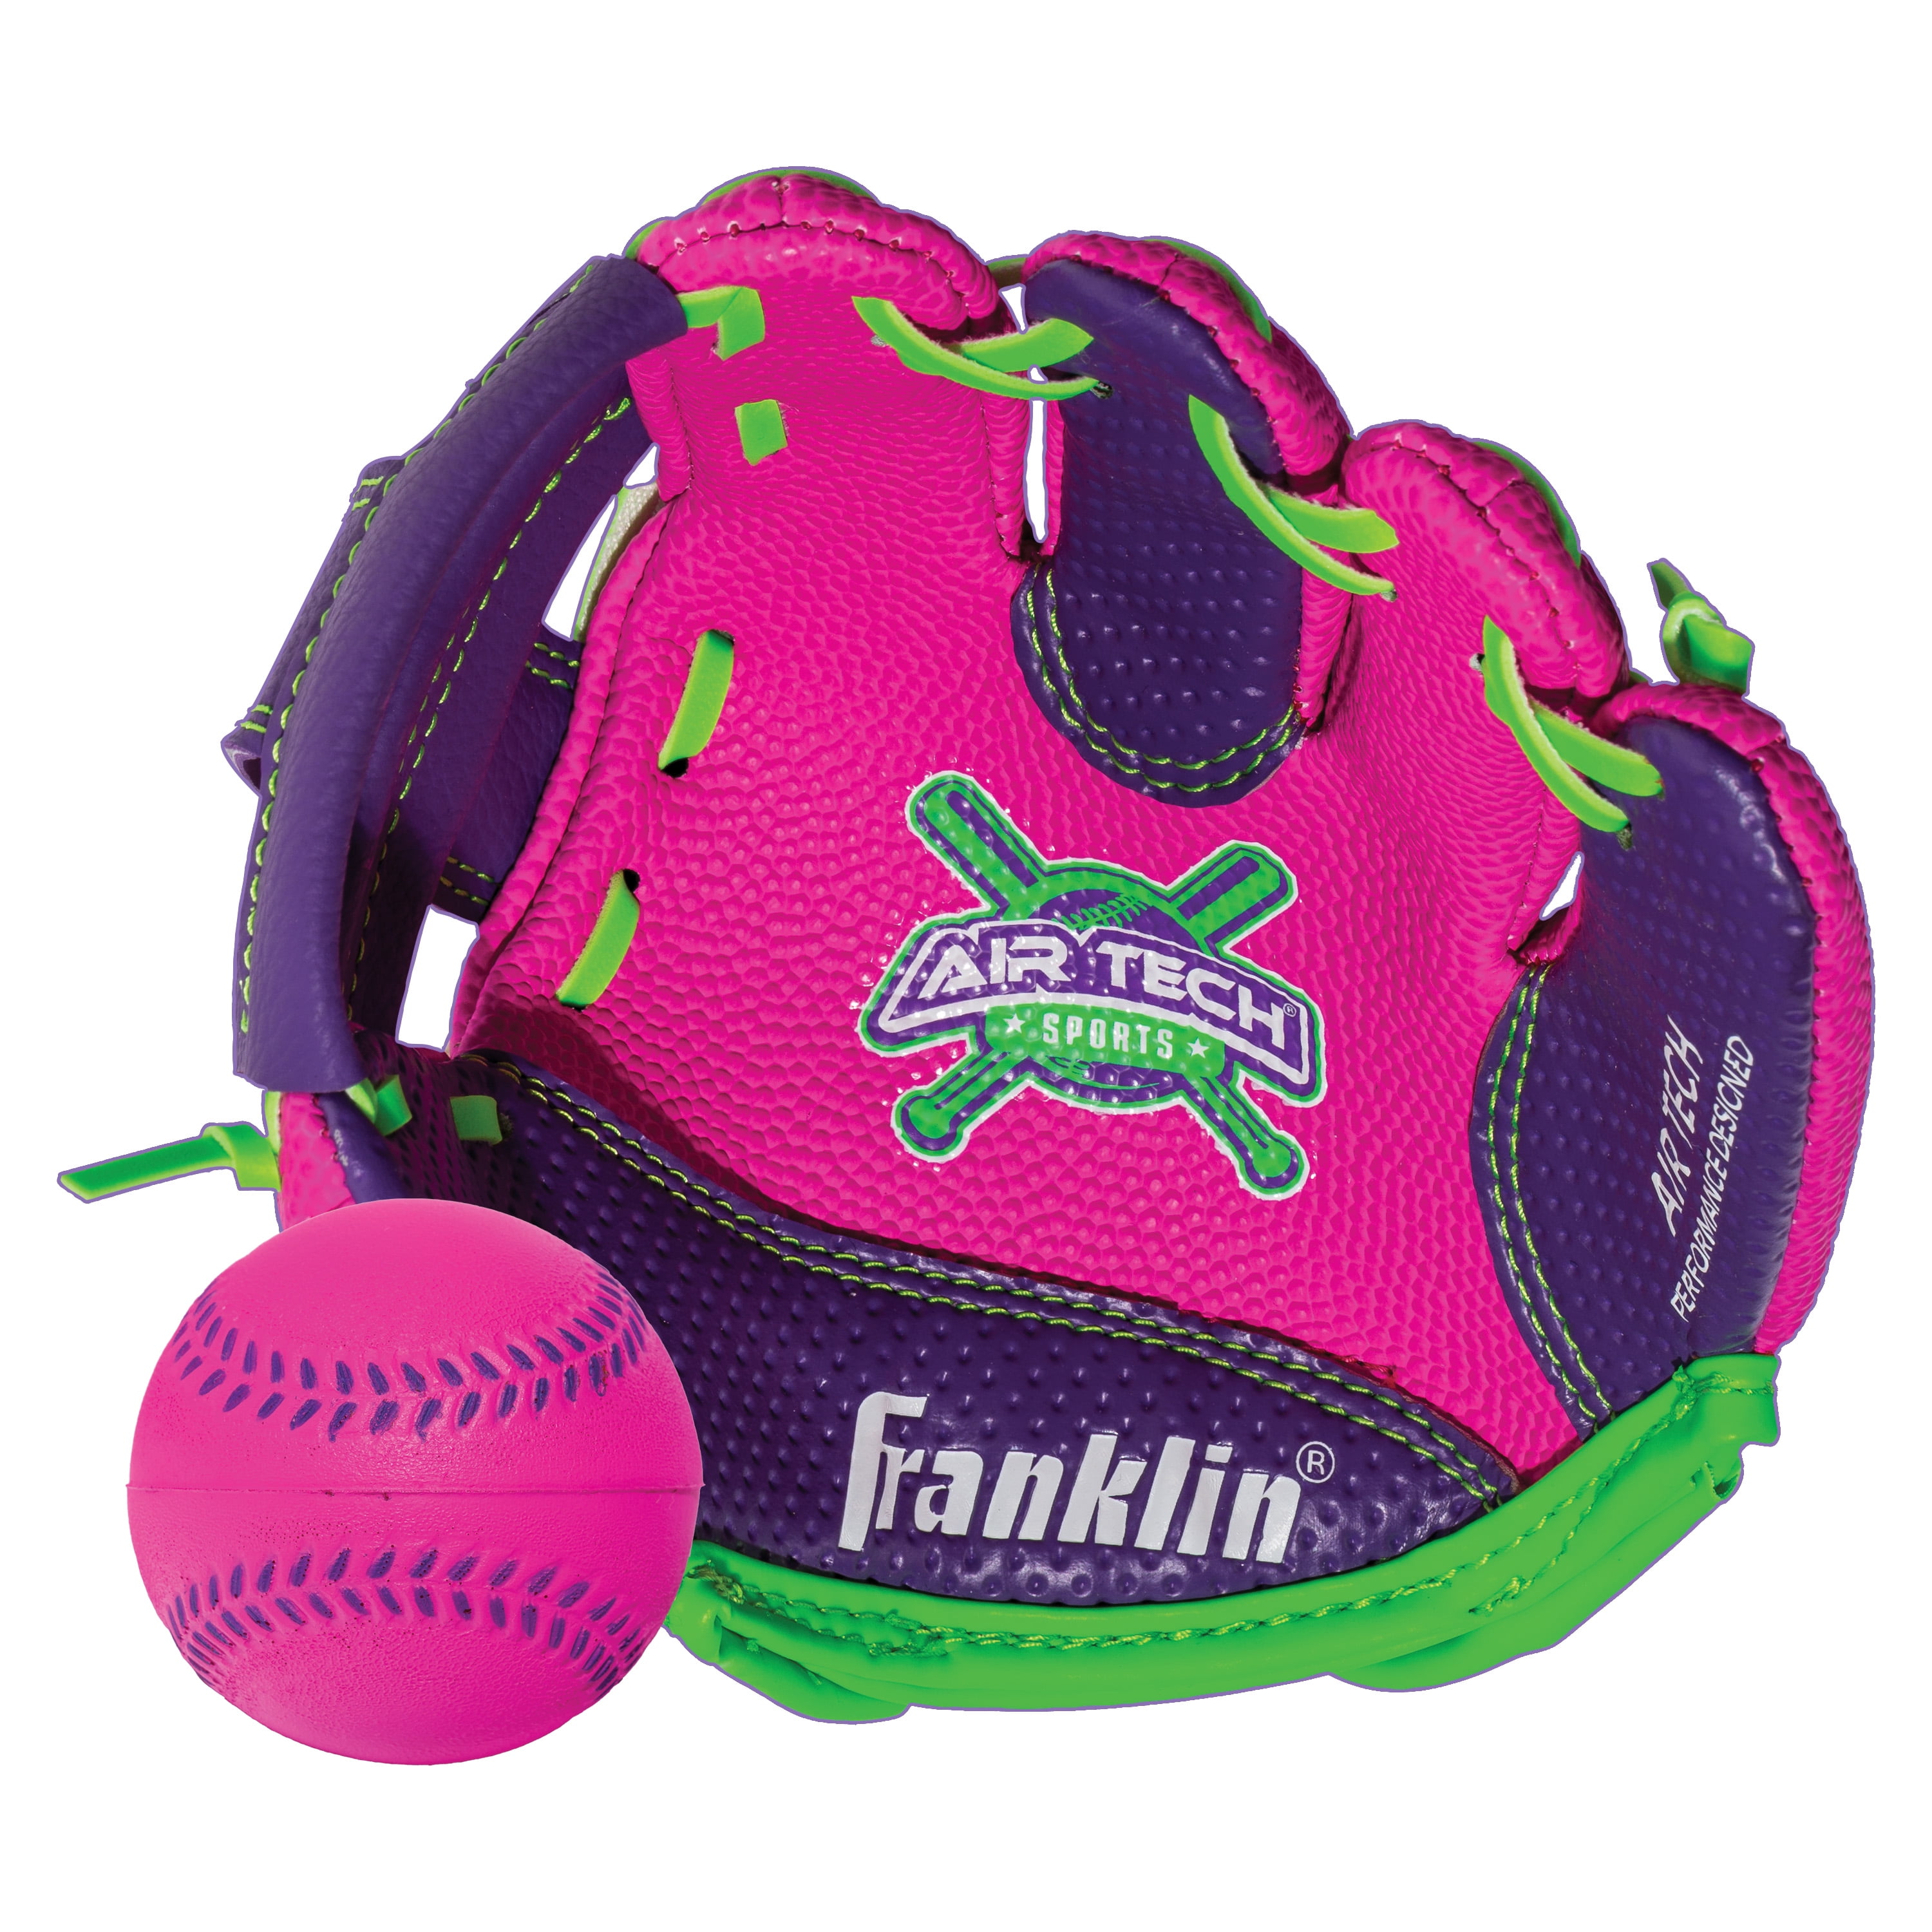 NEW Fielding Baseball Glove & Ball Set Age 3 Franklin Sports 8.5" Air Tech 